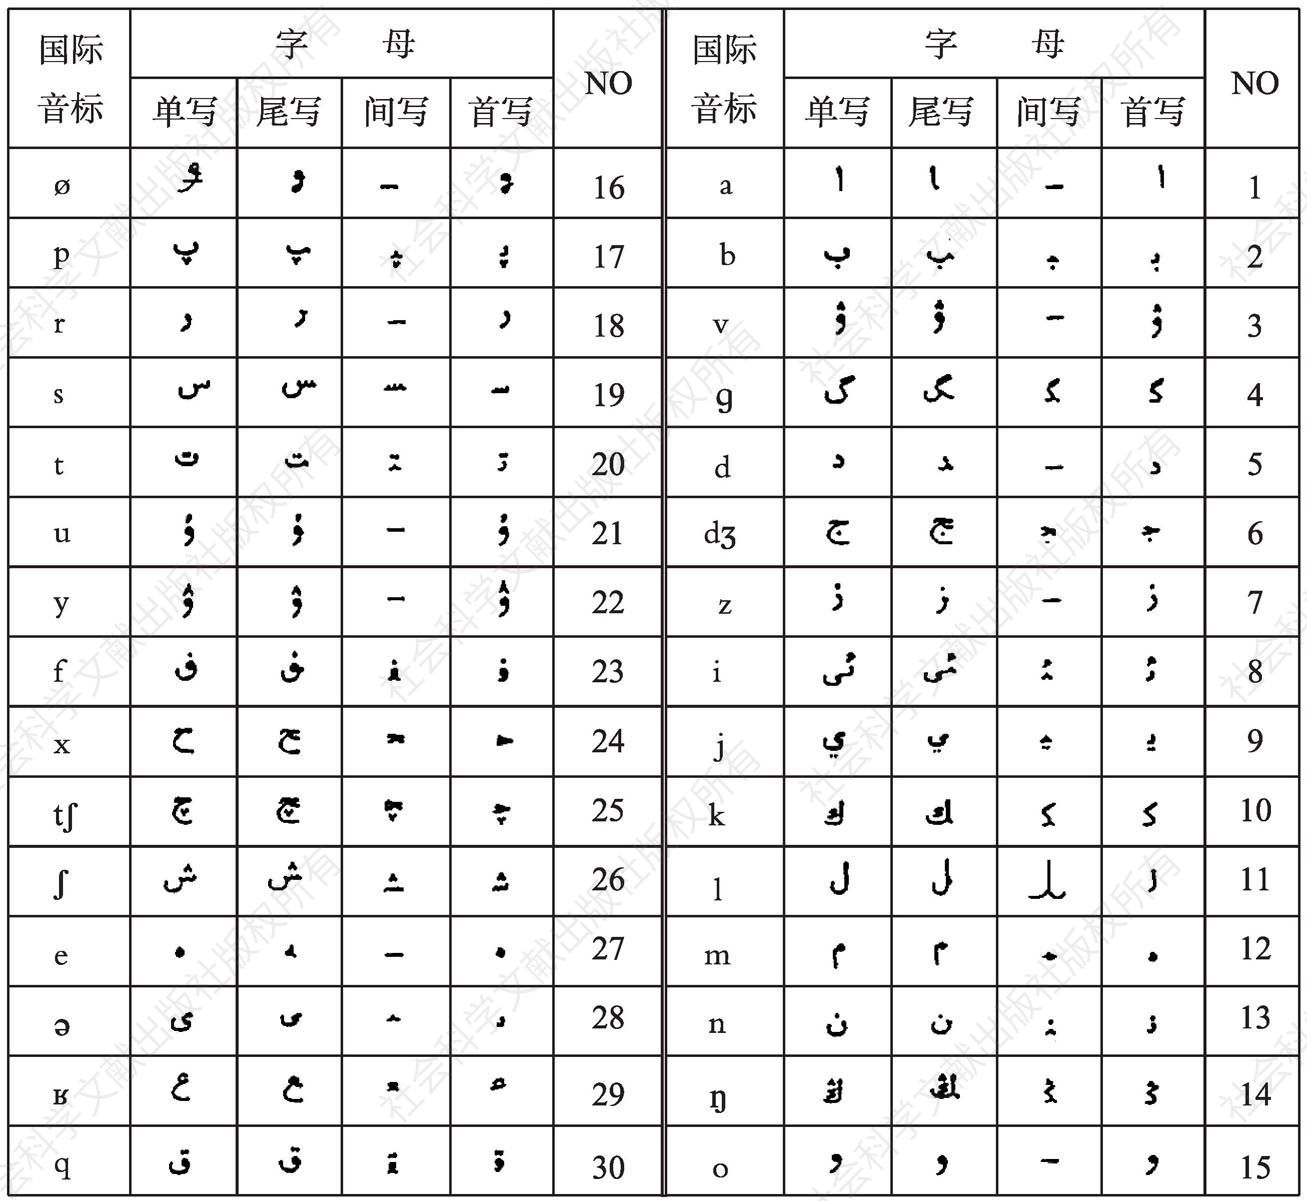 图4 1954年创制1983年修订的柯尔克孜文字母表